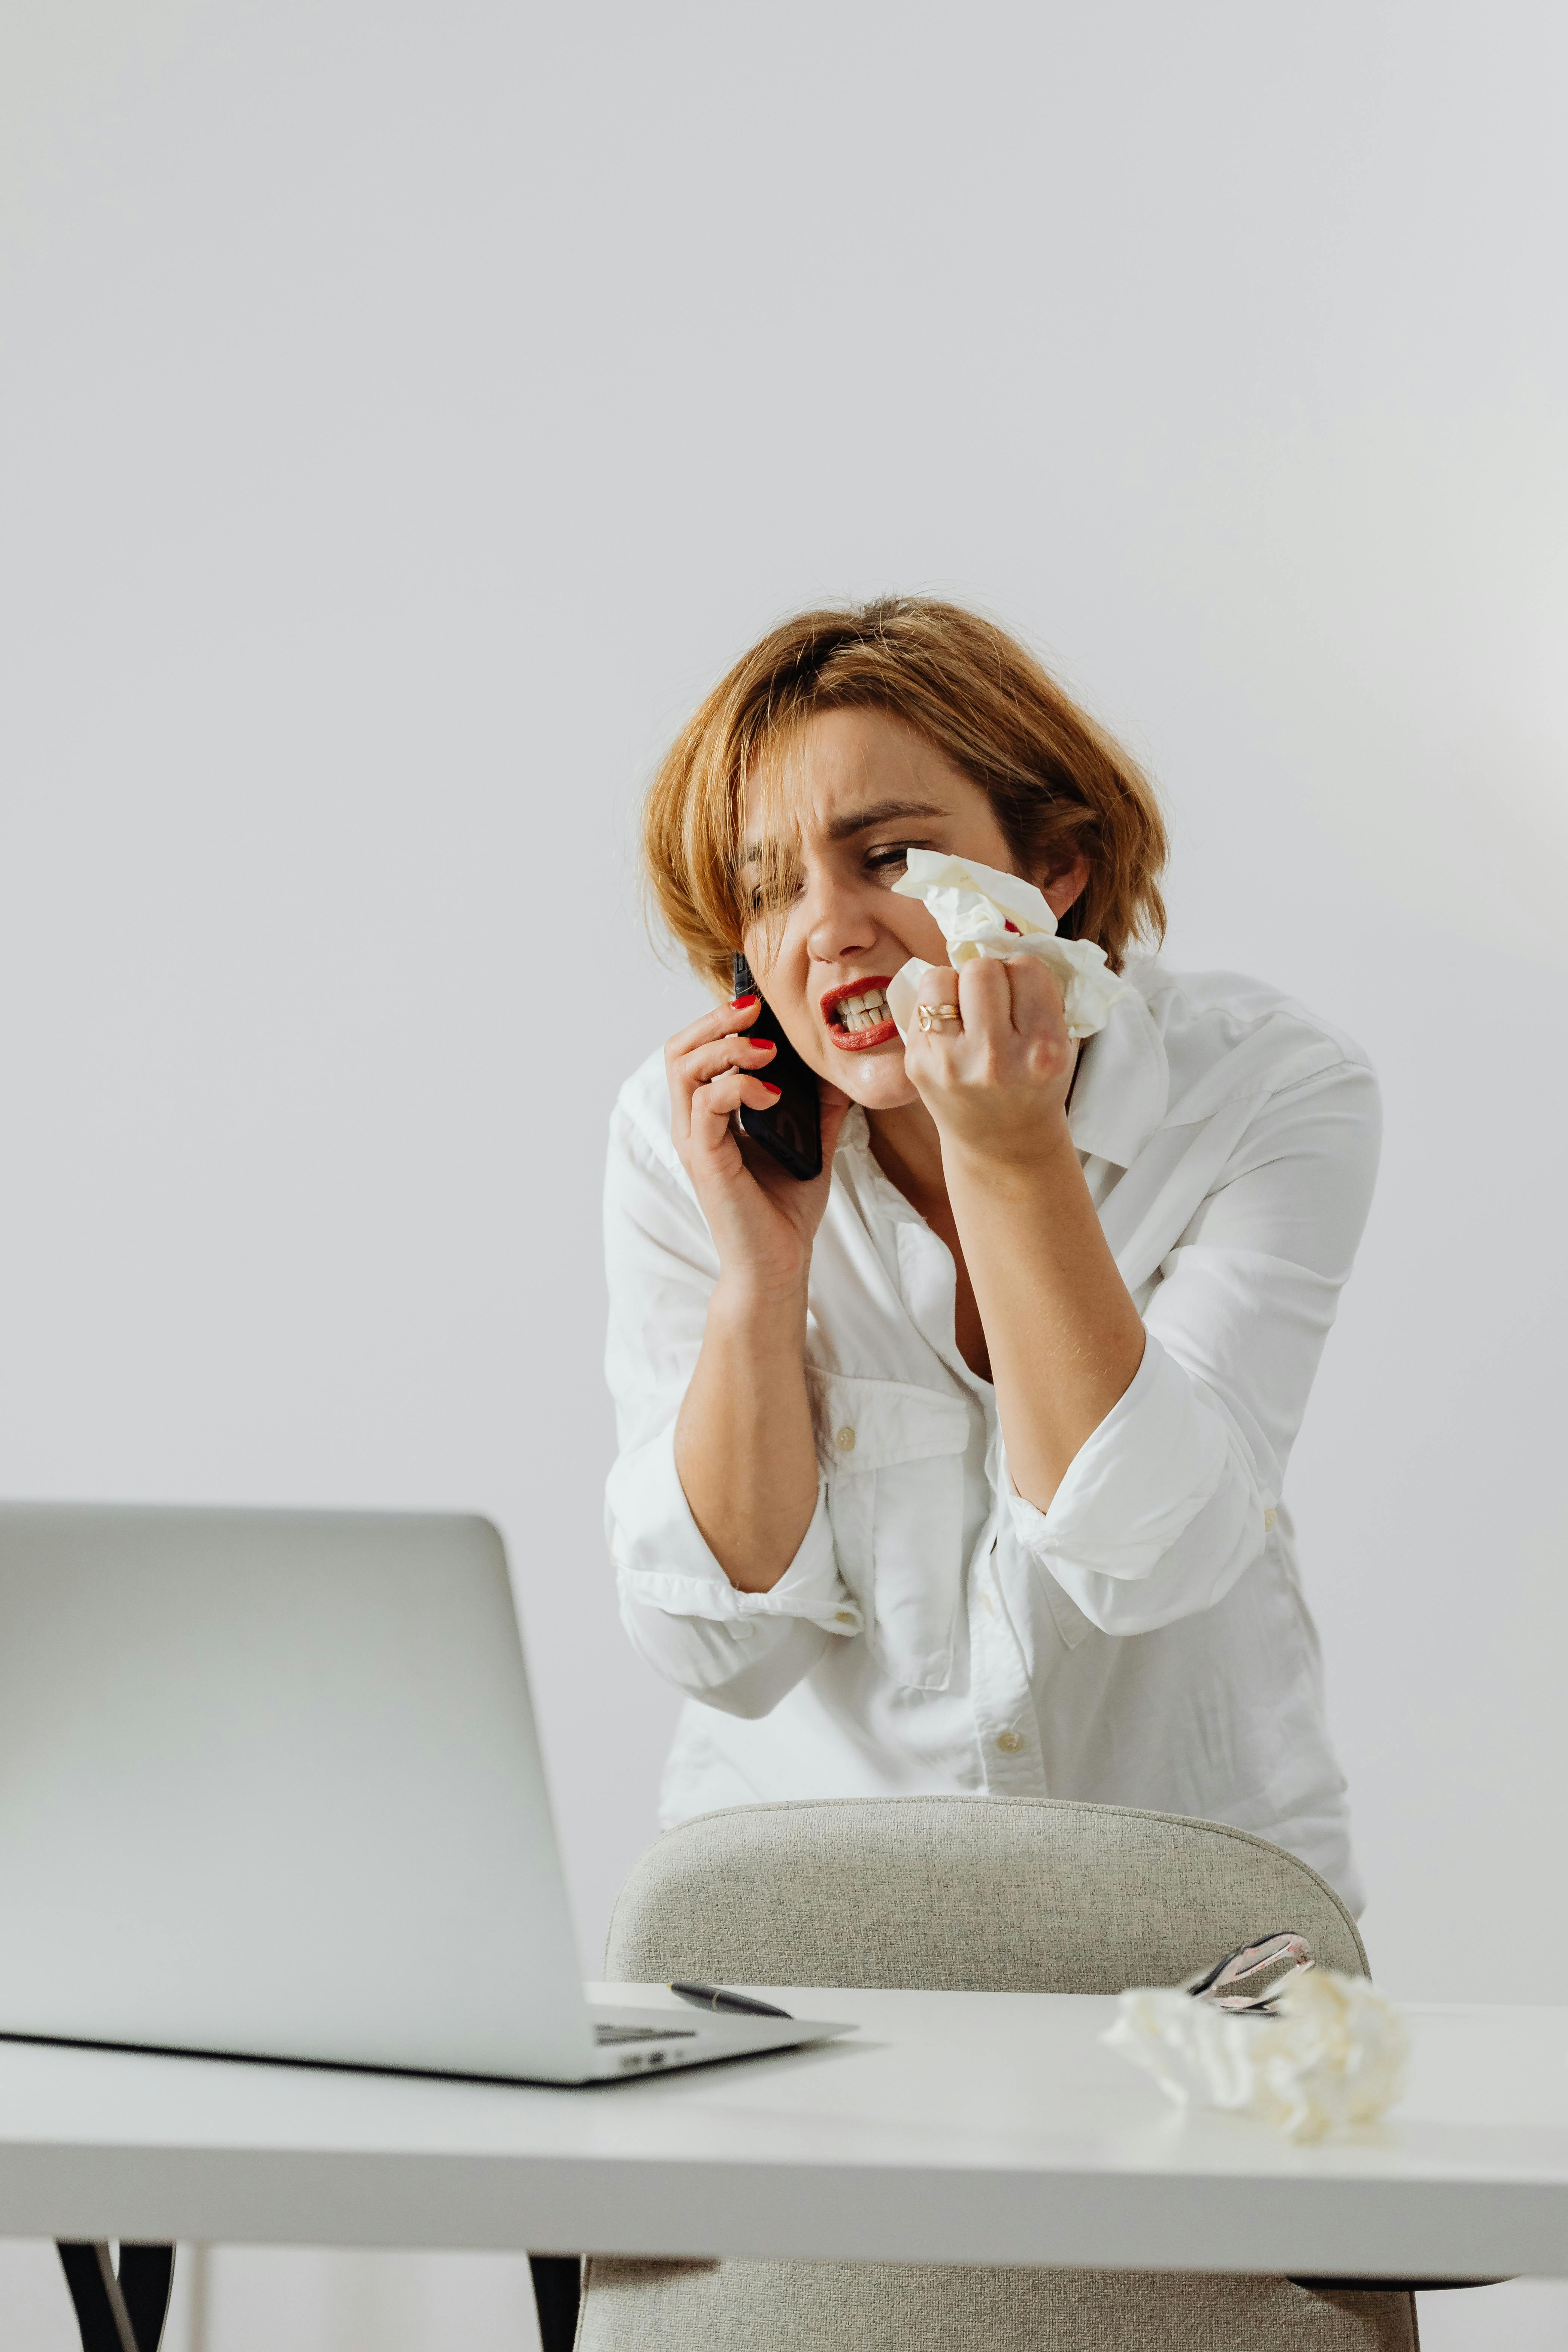 Une femme contrariée froisse un mouchoir en papier alors qu'elle est au téléphone | Source : Pexels